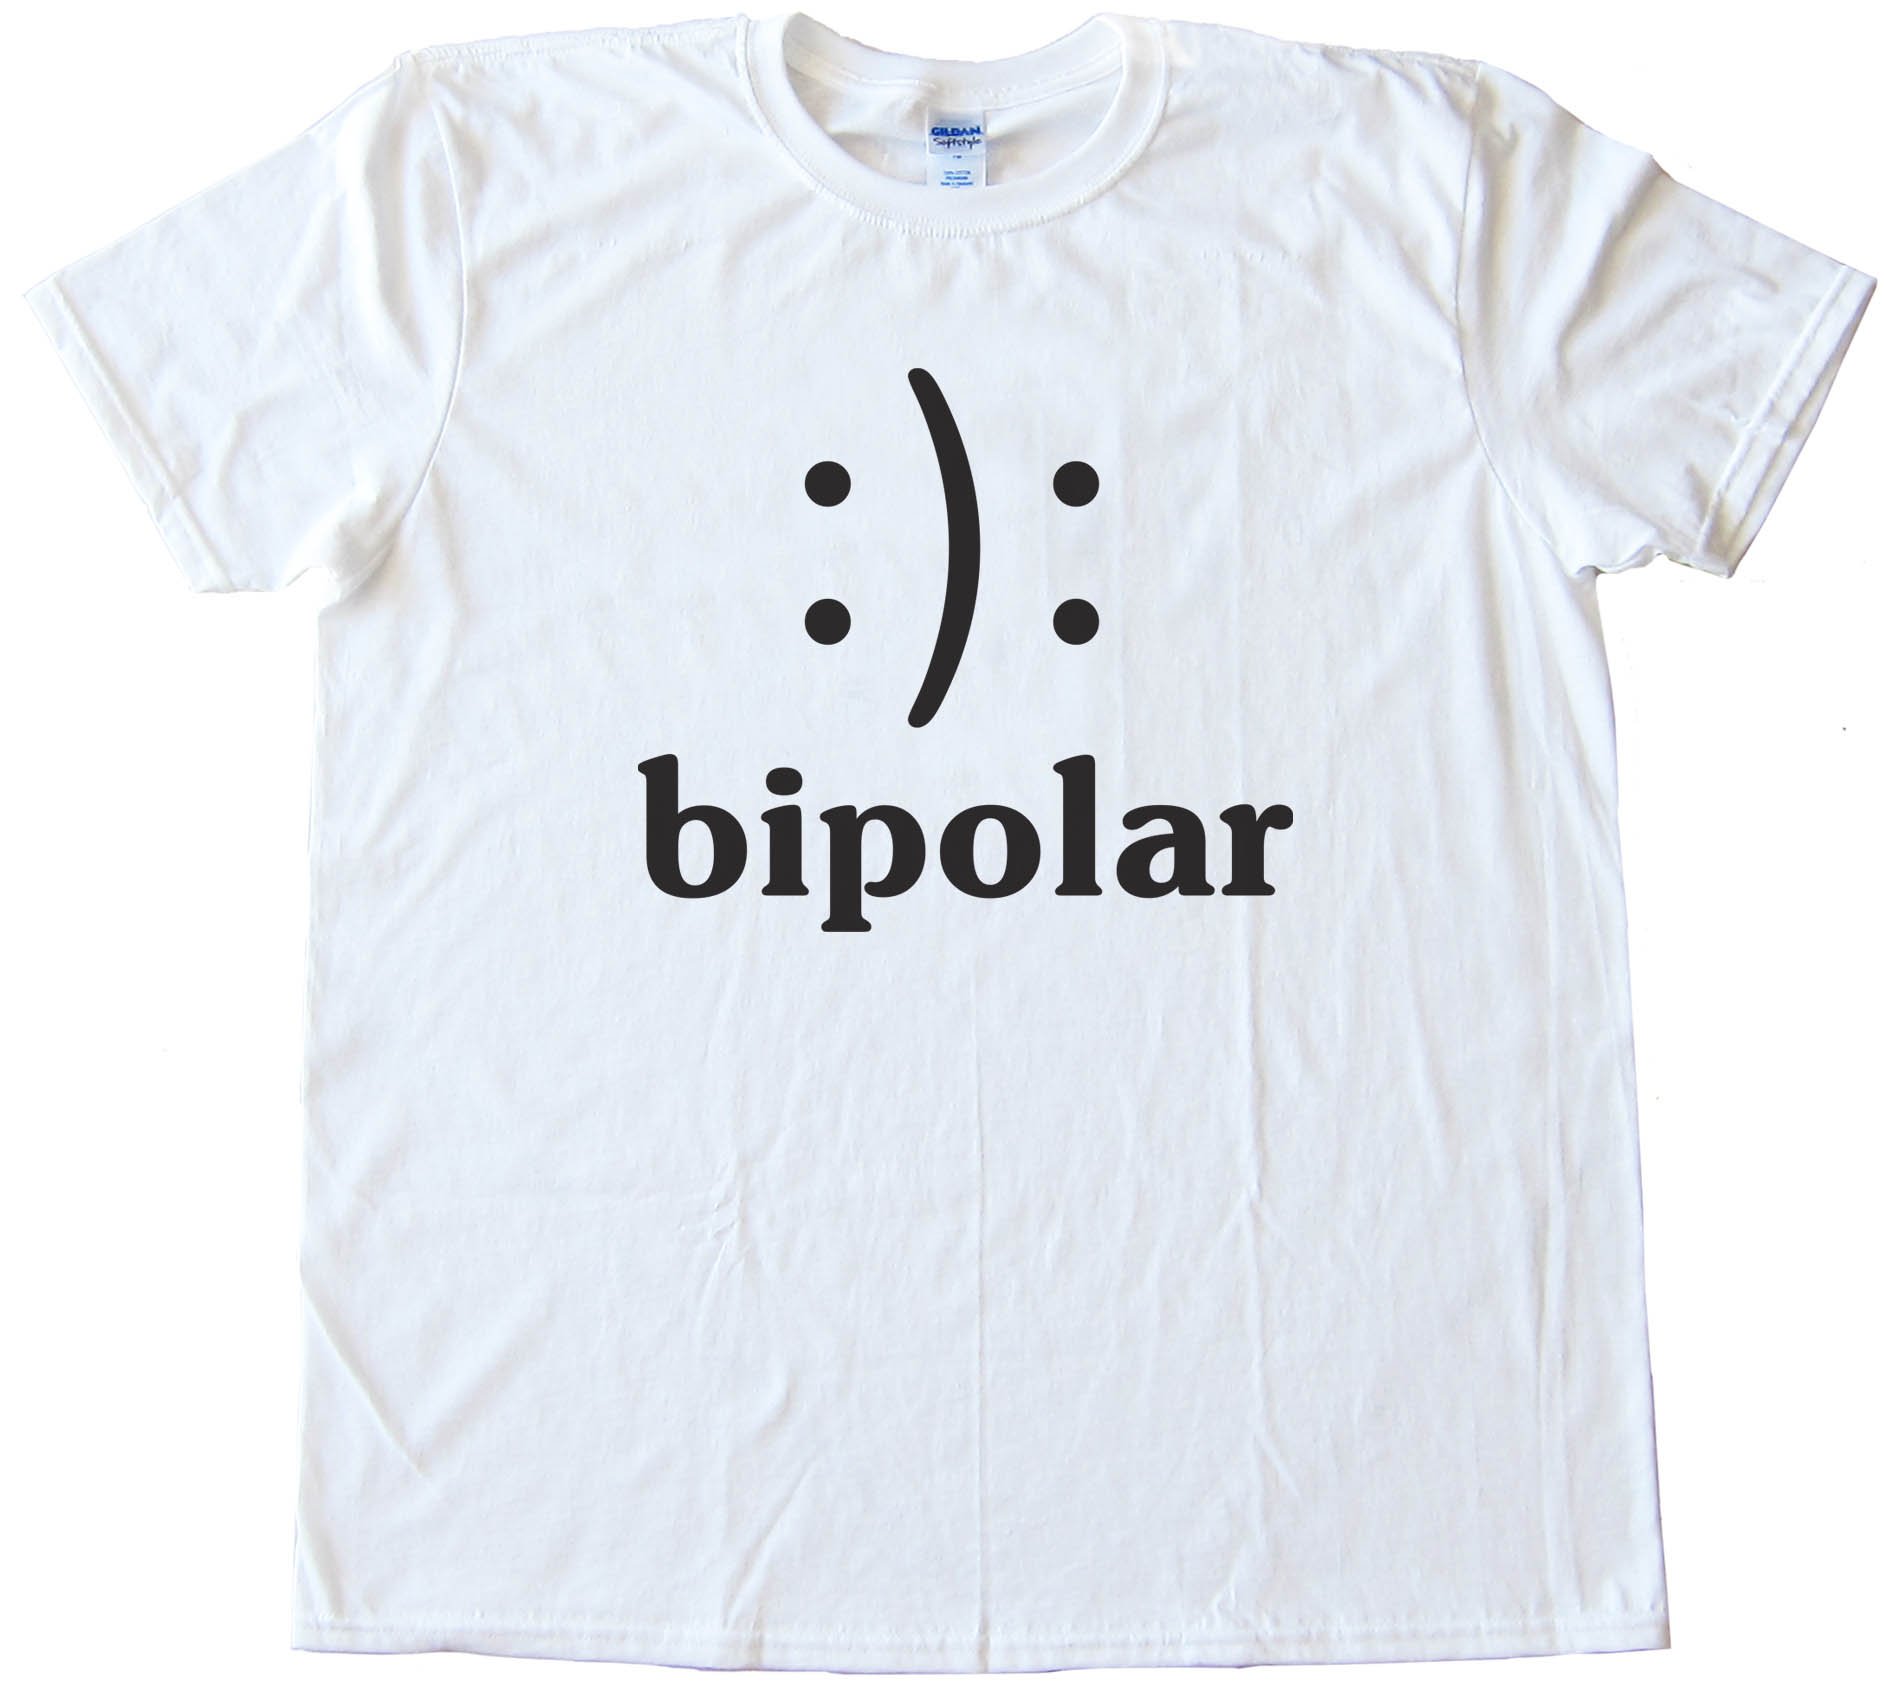 Bipolar Smiley Face - Tee Shirt